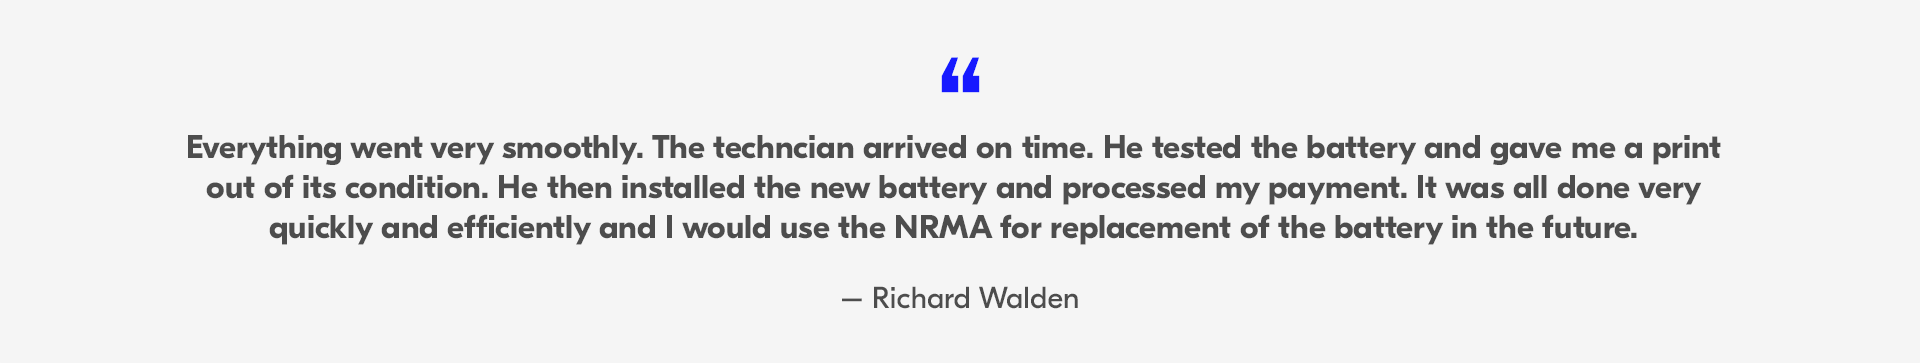 NRMA Batteries Testimonial